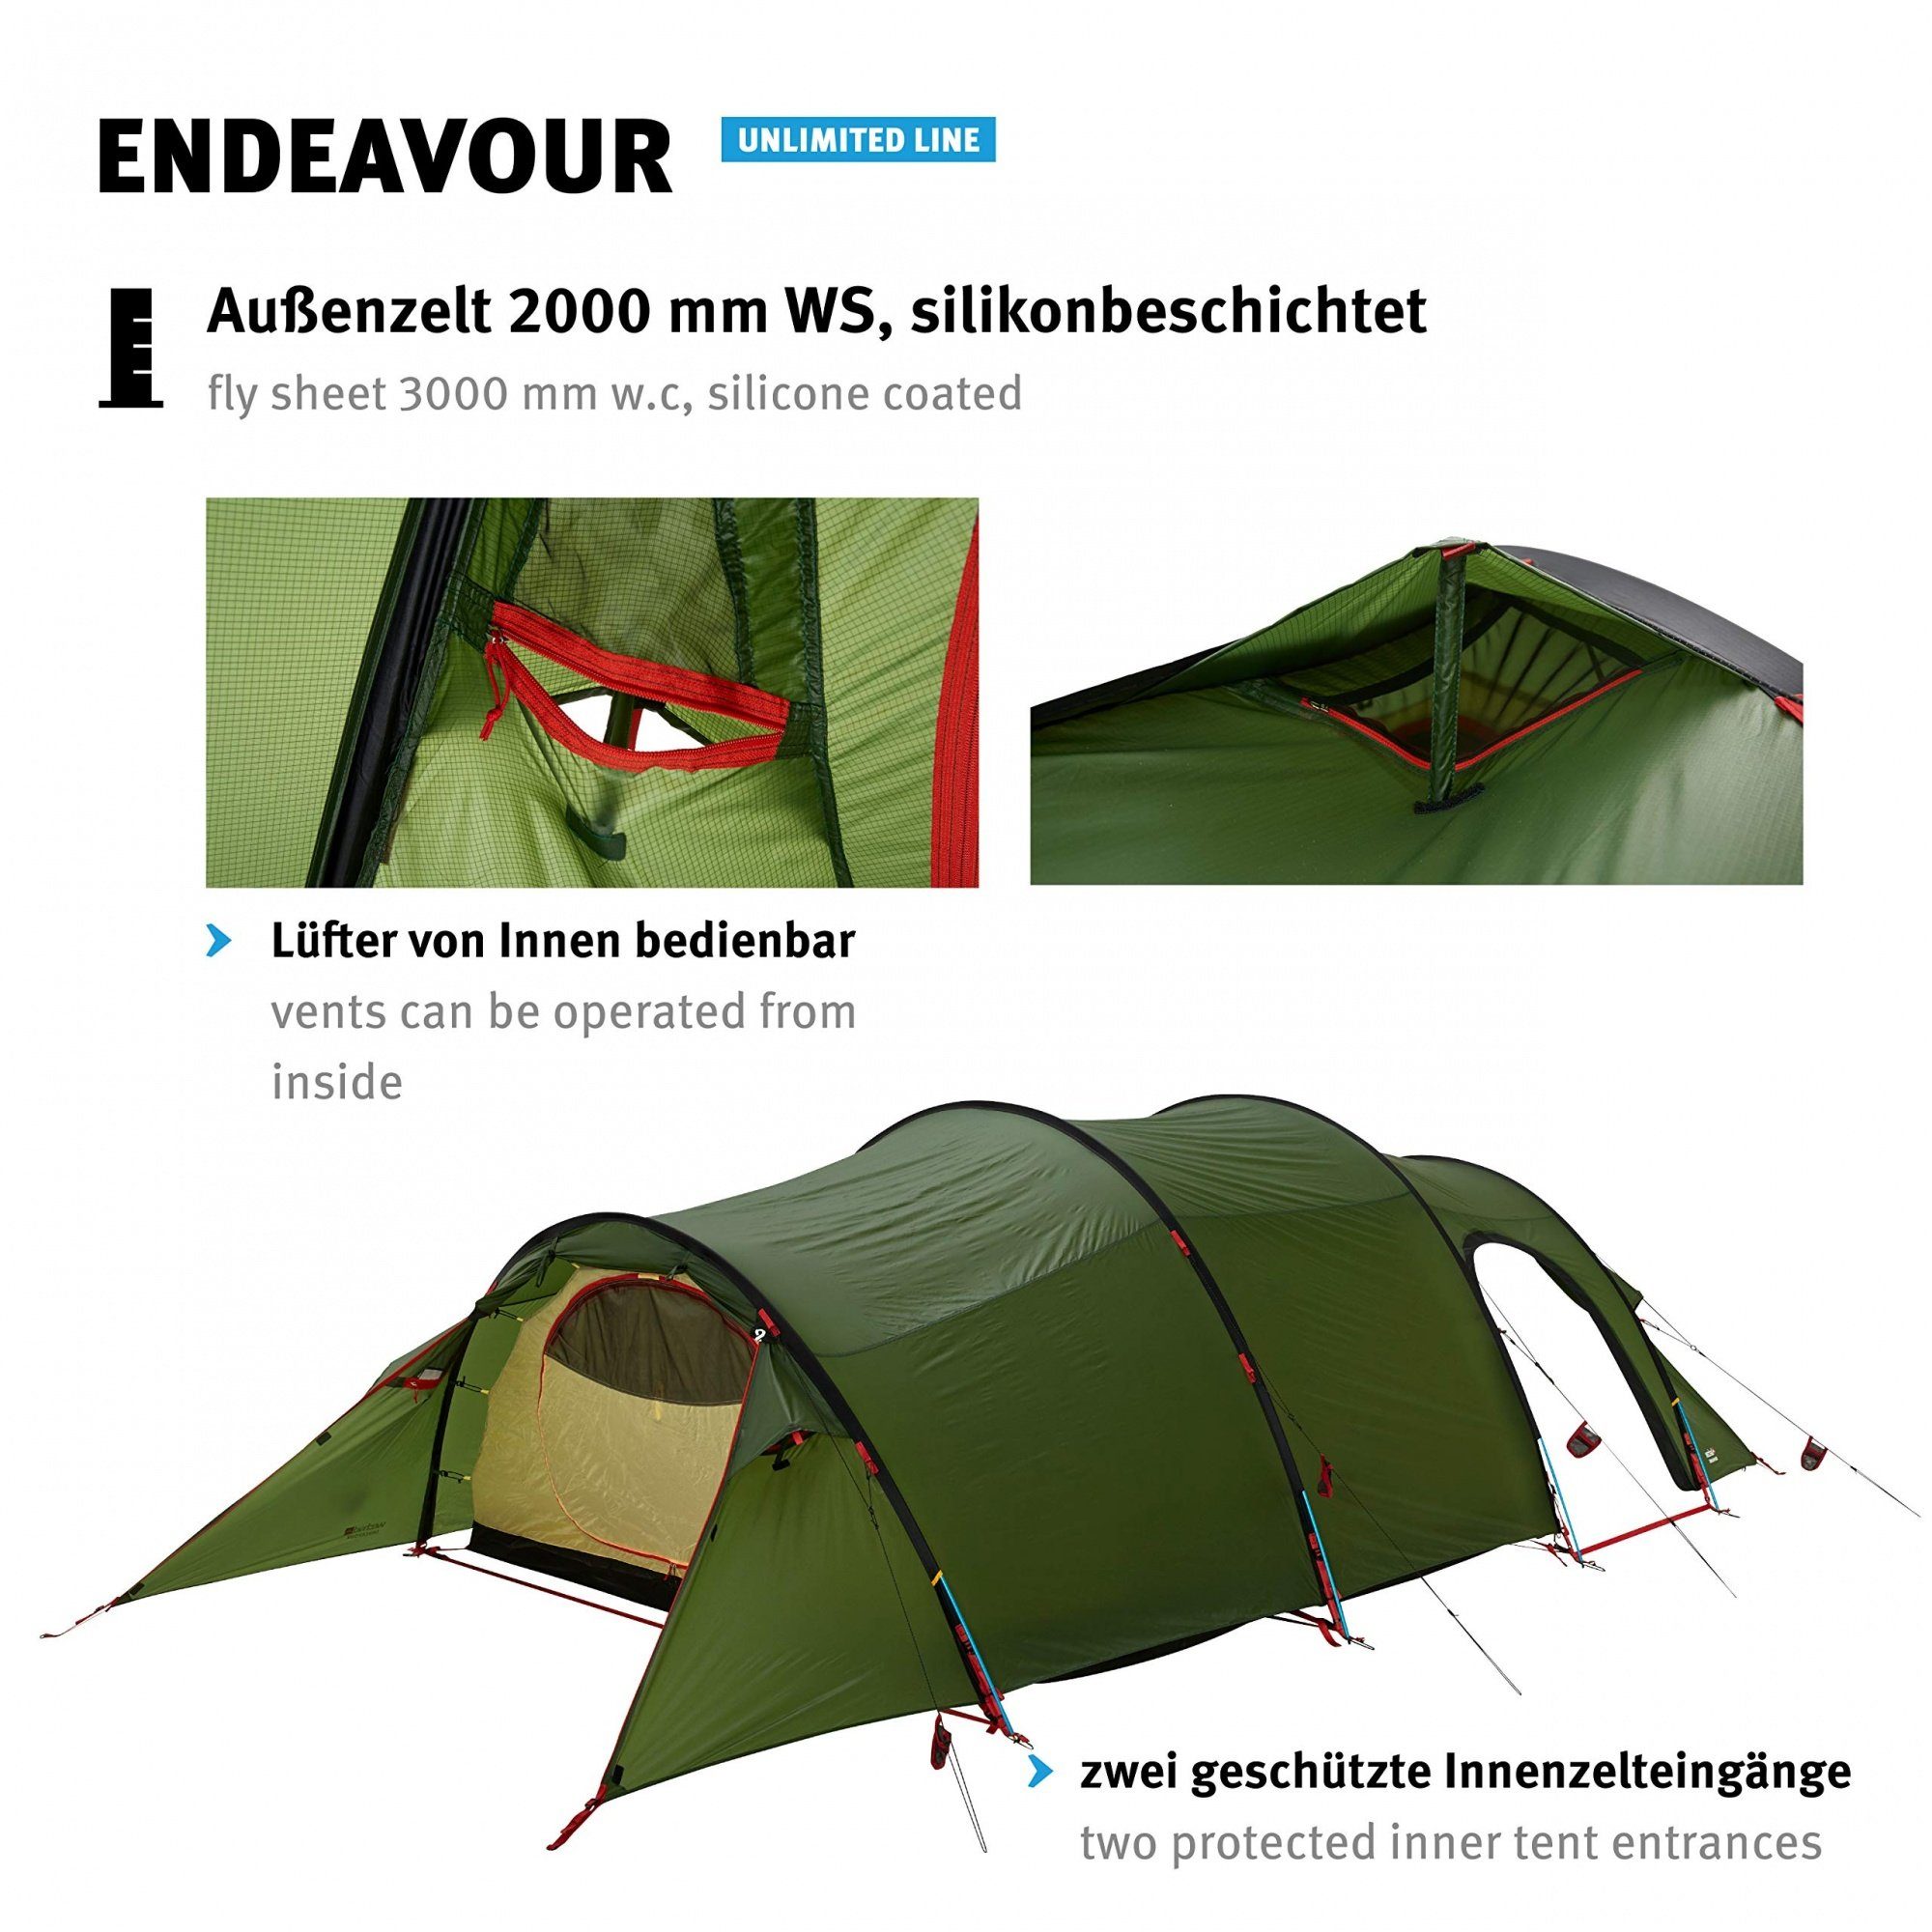 4 4 Jahreszeiten Endeavour Grün, 4 Biwakzelt Tents Wechsel - Personen: Expeditionszelt - Personen